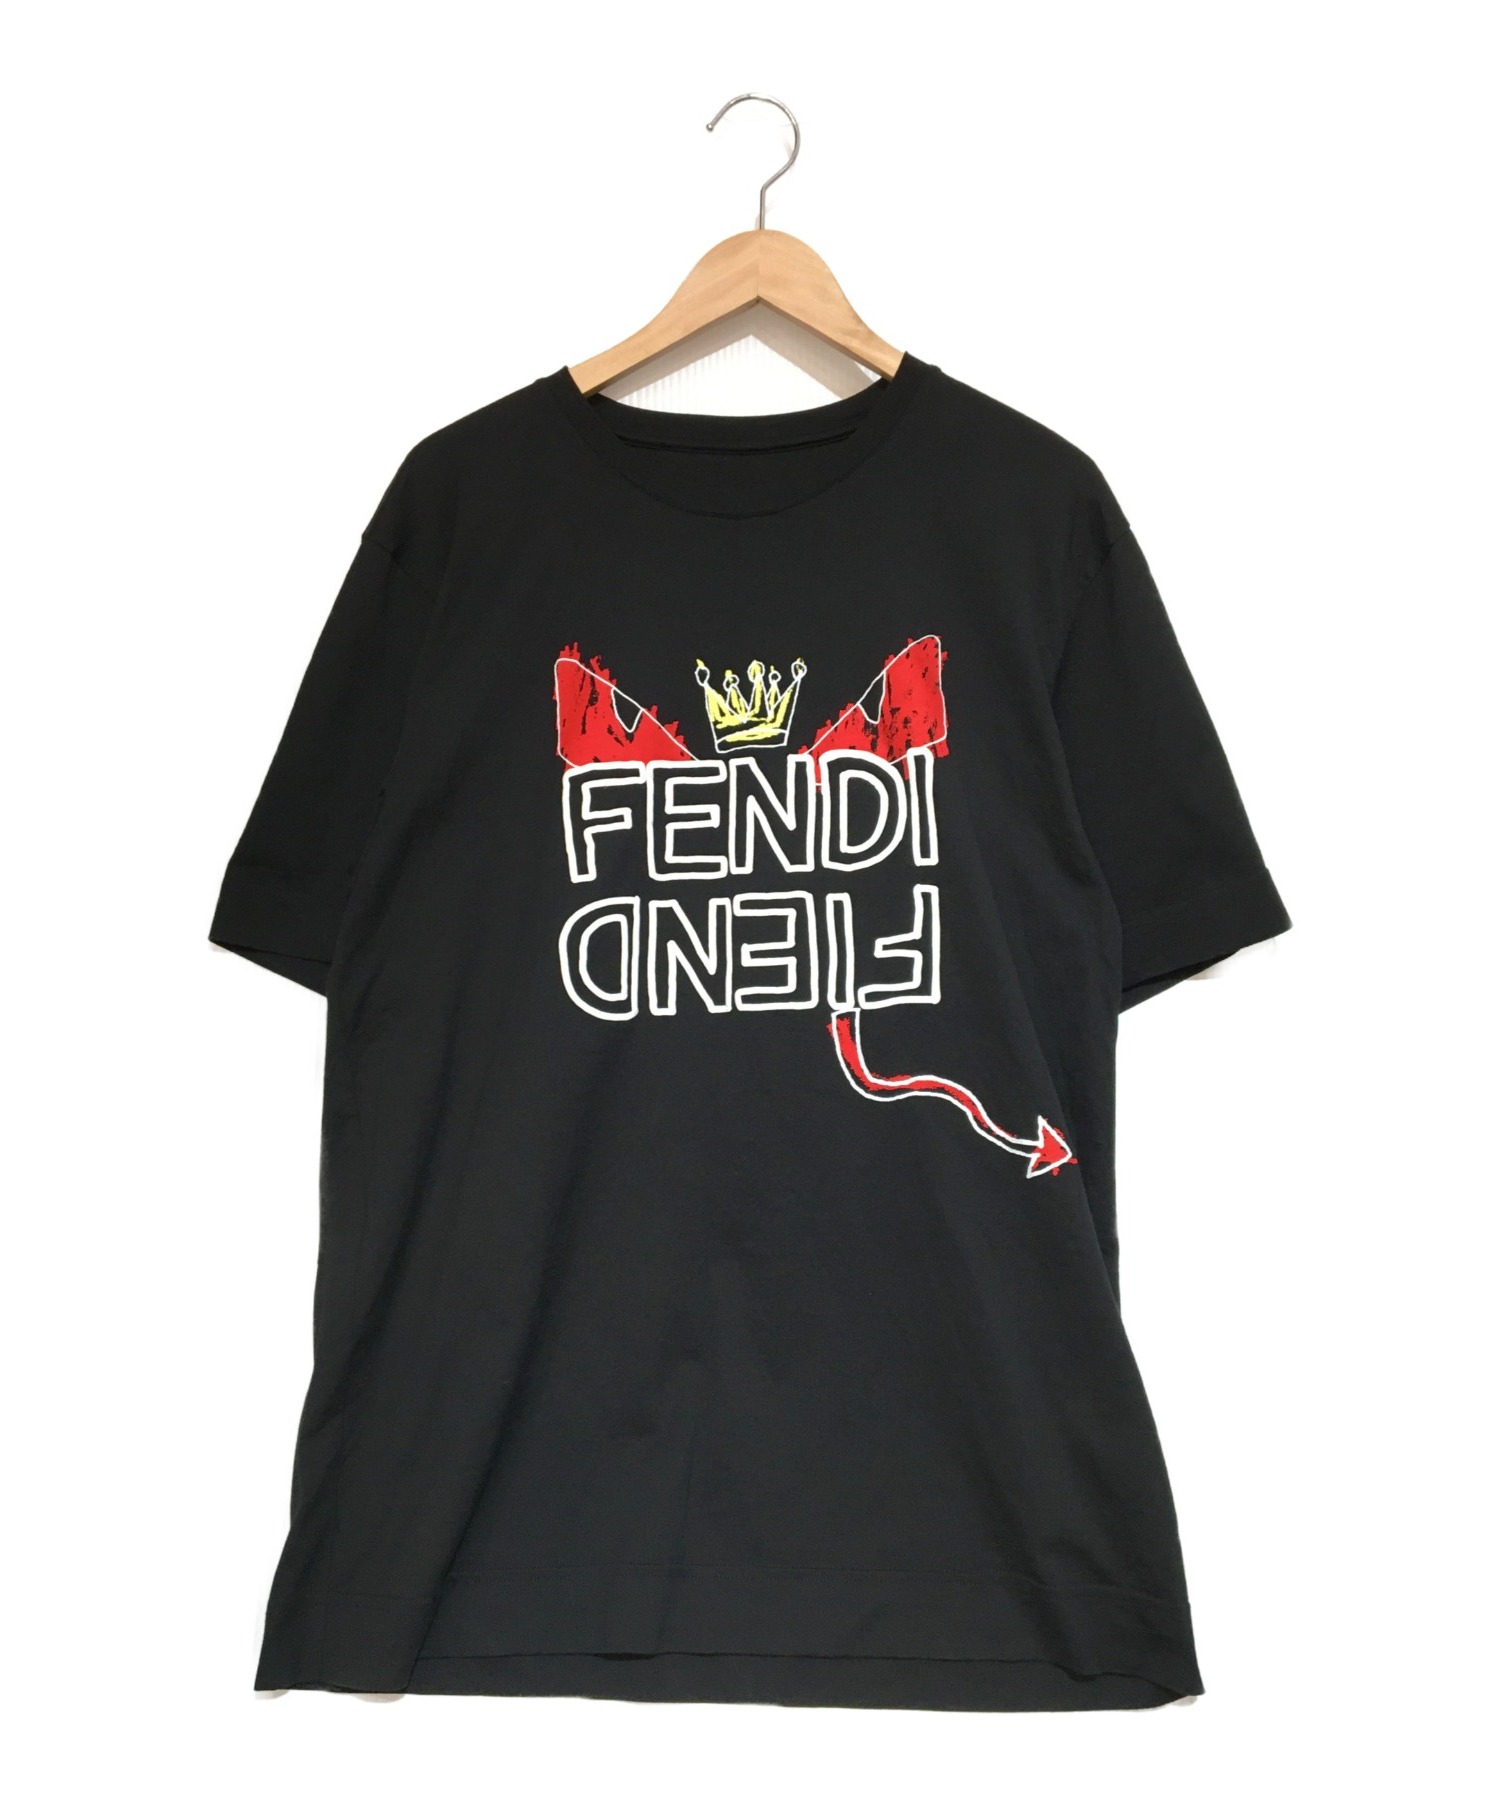 FENDI (フェンディ) モンスターロゴプリントTシャツ ブラック サイズ:M